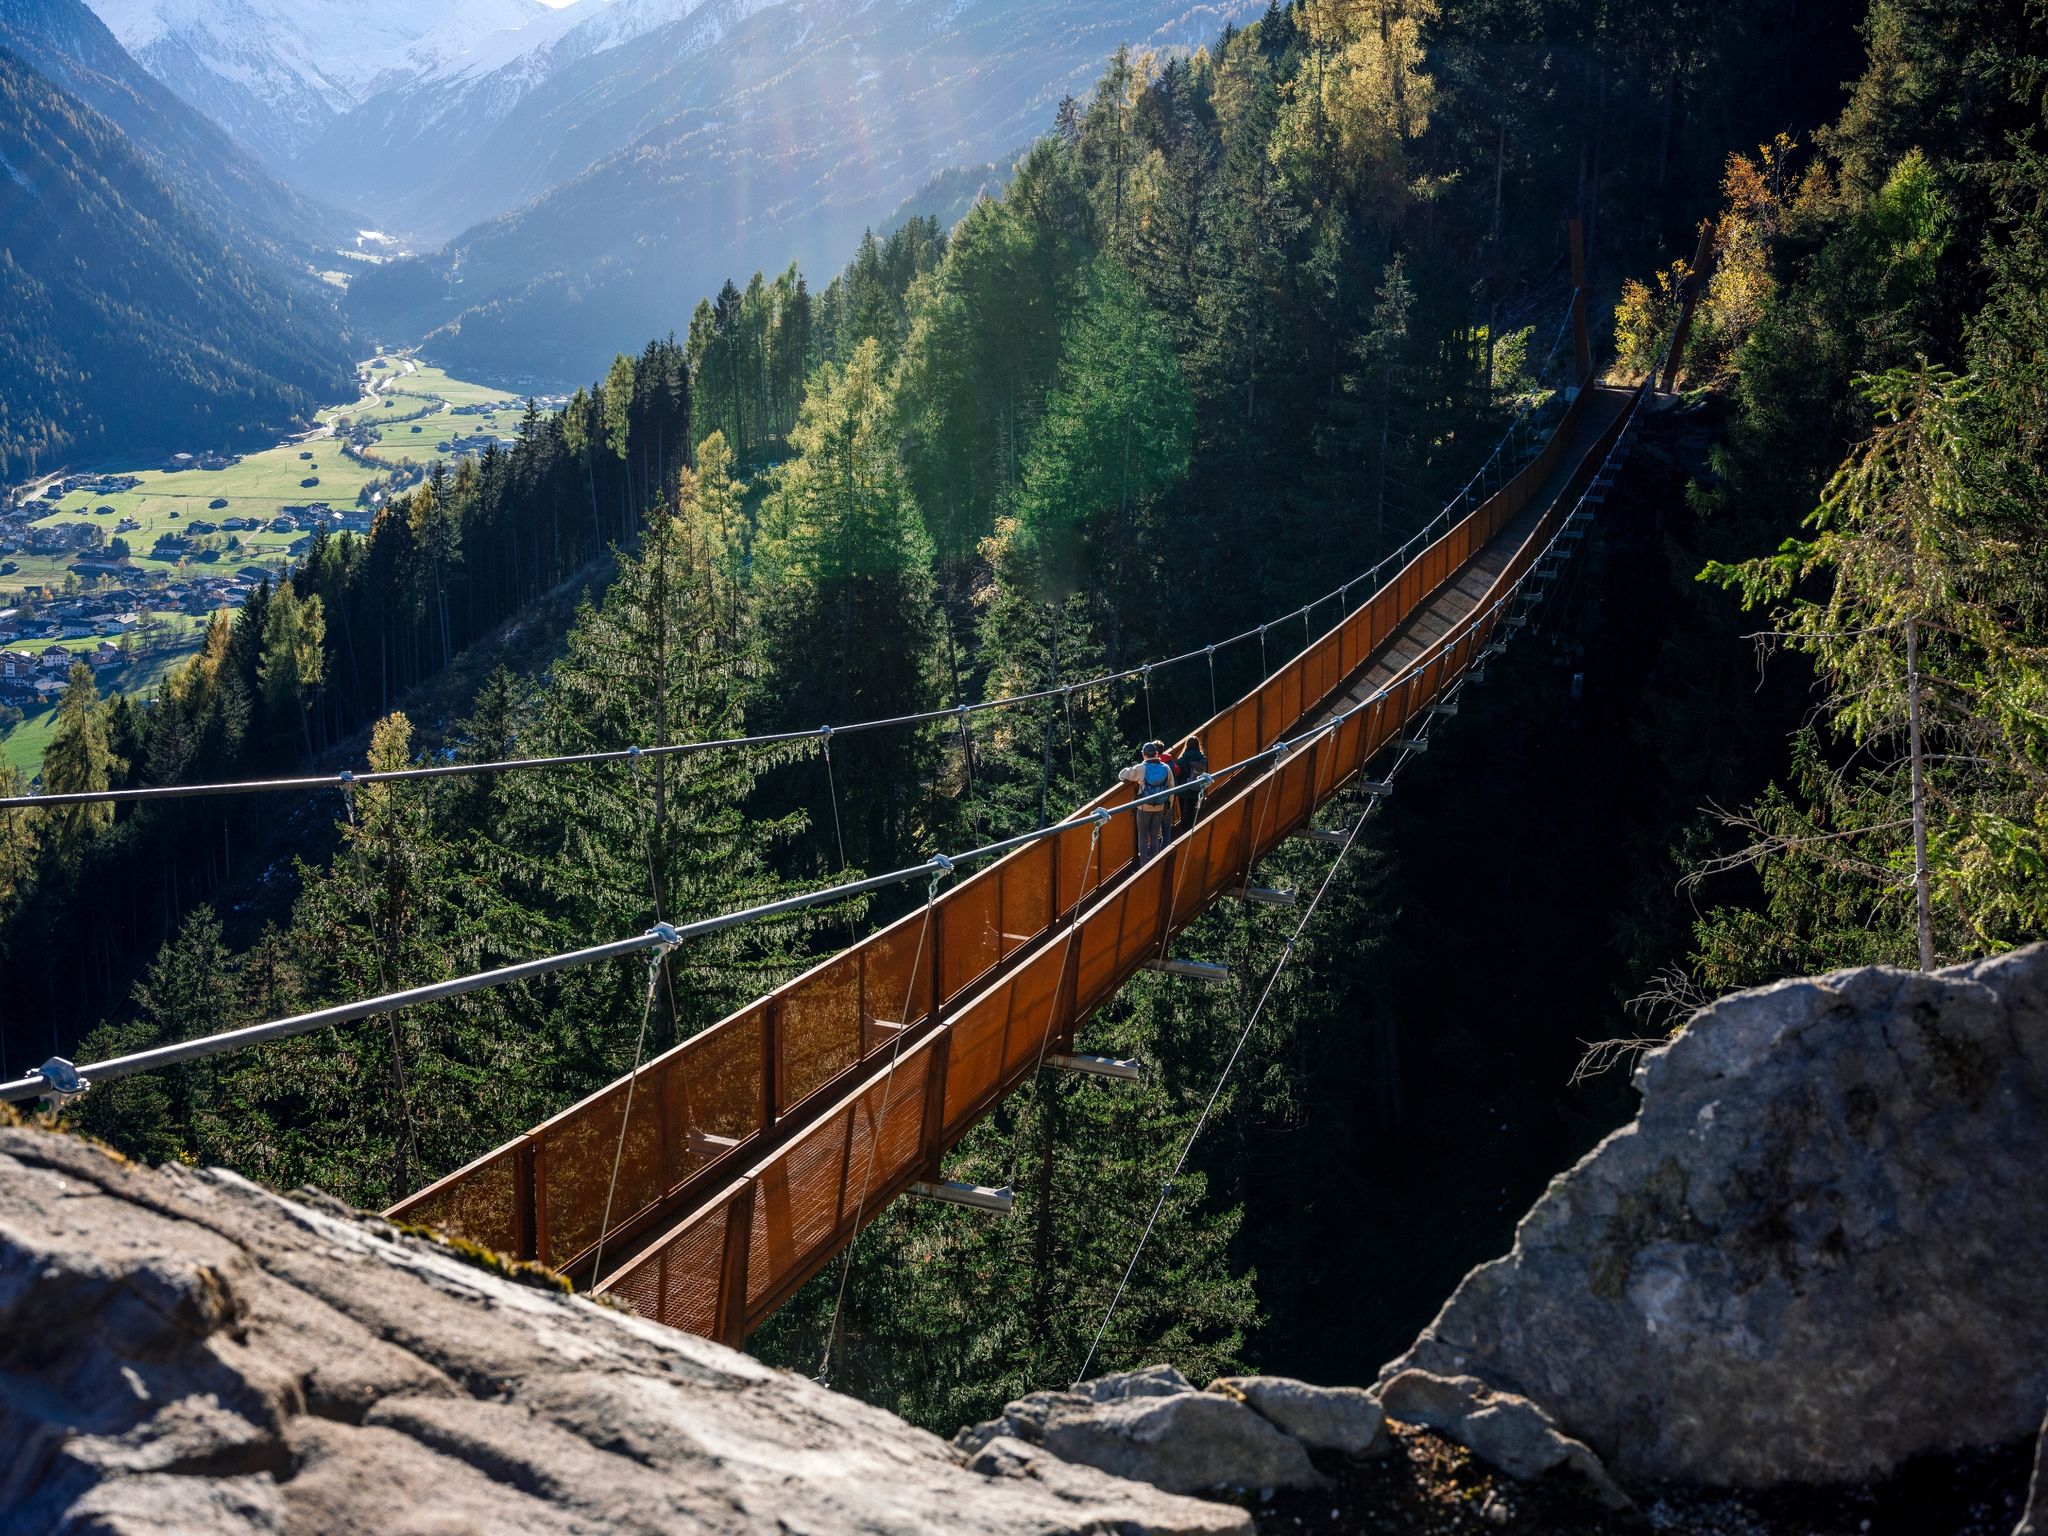 Wandern mit Aussicht: Die mehr als 100 Meter lange Hängebrücke im Stubaital führt an einem Berghang 46 Meter über den Boden und eröffnet einen Fernblick auf den Ort Neustift.